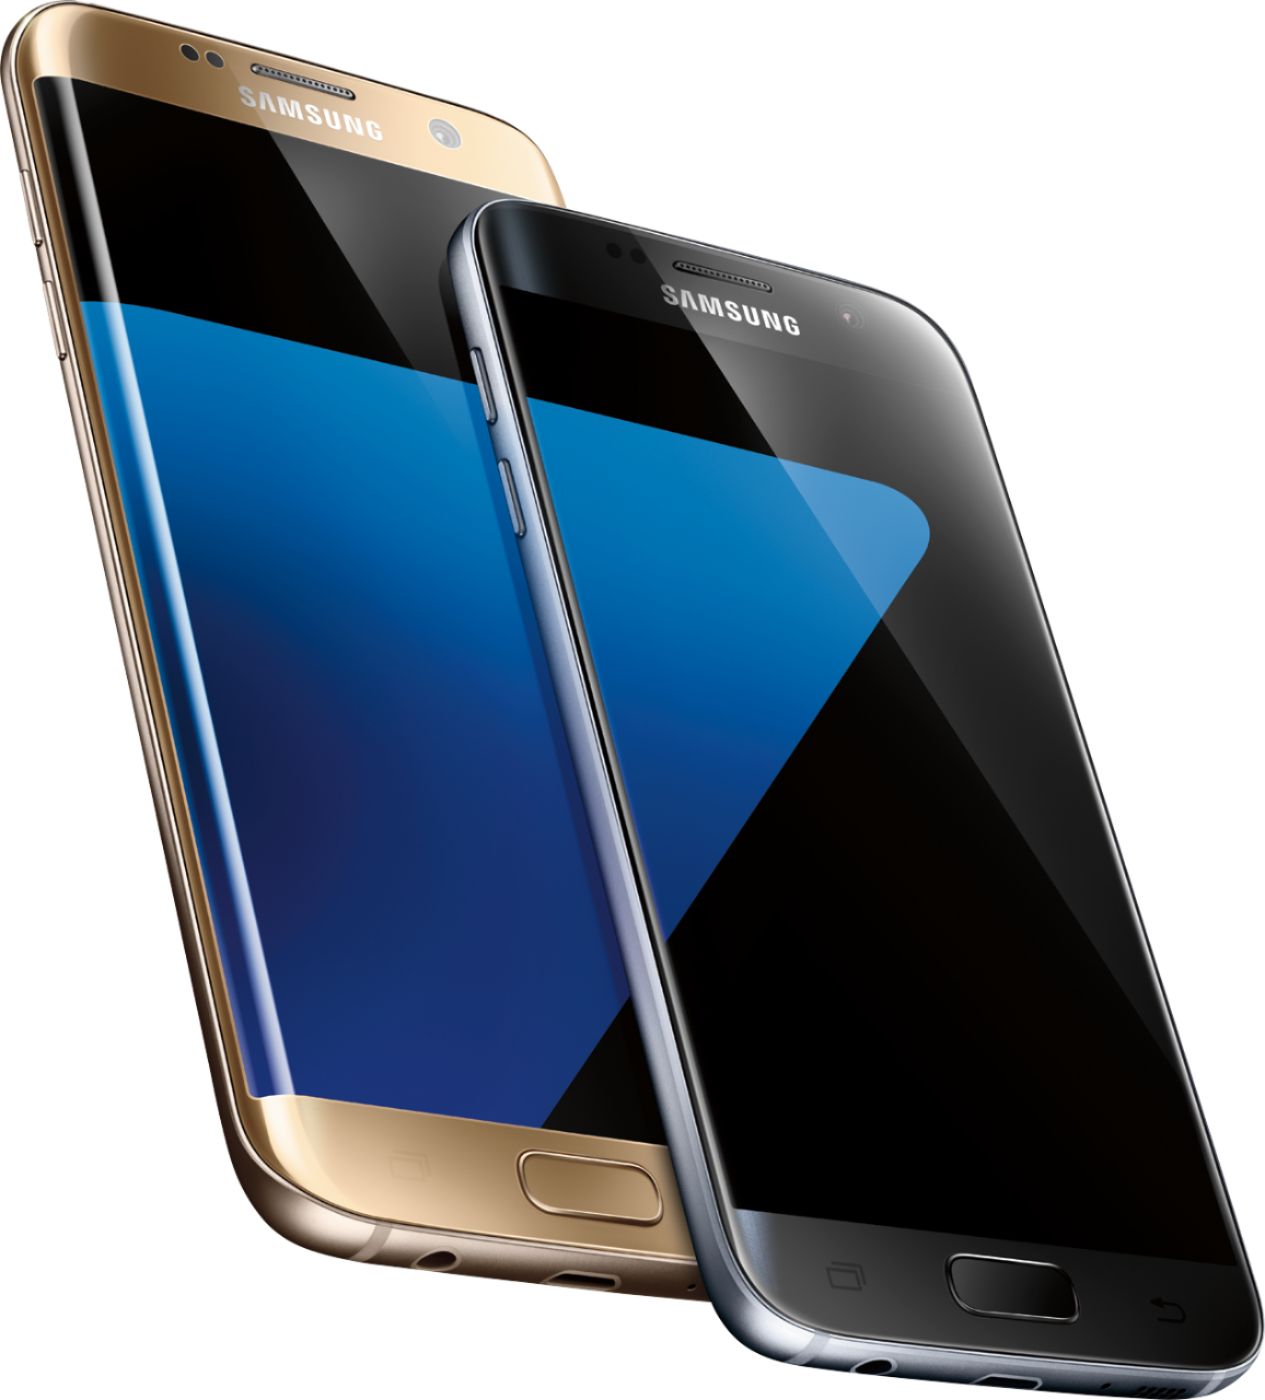 Tenen satelliet Zware vrachtwagen Best Buy: Samsung Galaxy S7 4G LTE with 32GB Memory Cell Phone (Unlocked)  Black Onyx SM-G930UZKAXAA